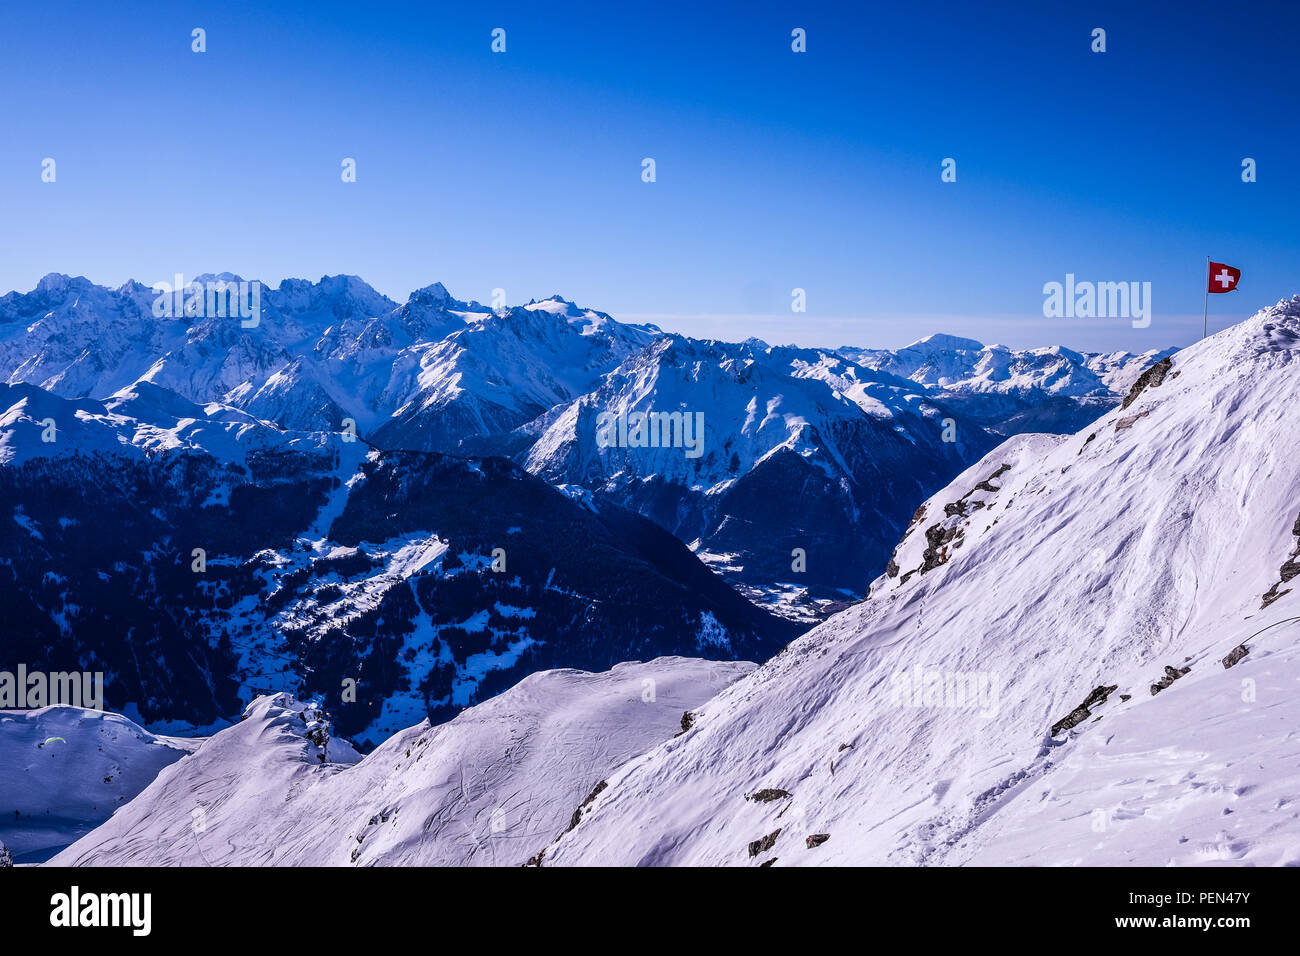 Con vistas al paisaje de las laderas de la estación de esquí de Verbier en Suiza, rodada en el invierno de 2019 Foto de stock